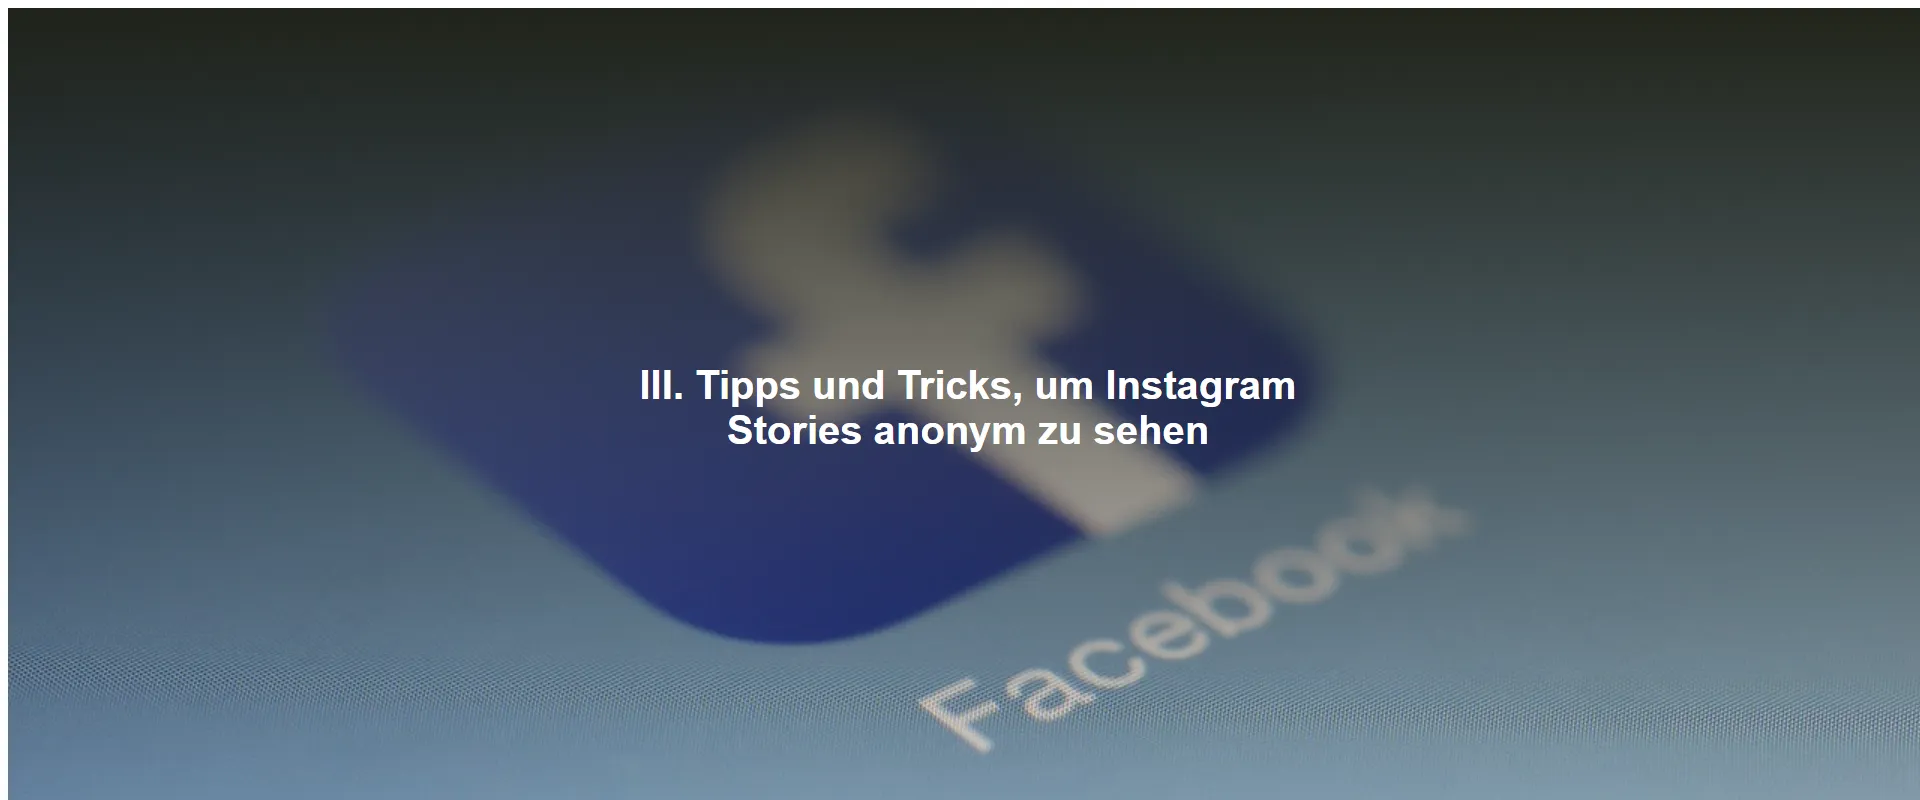 Tipps und Tricks, um Instagram Stories anonym zu sehen